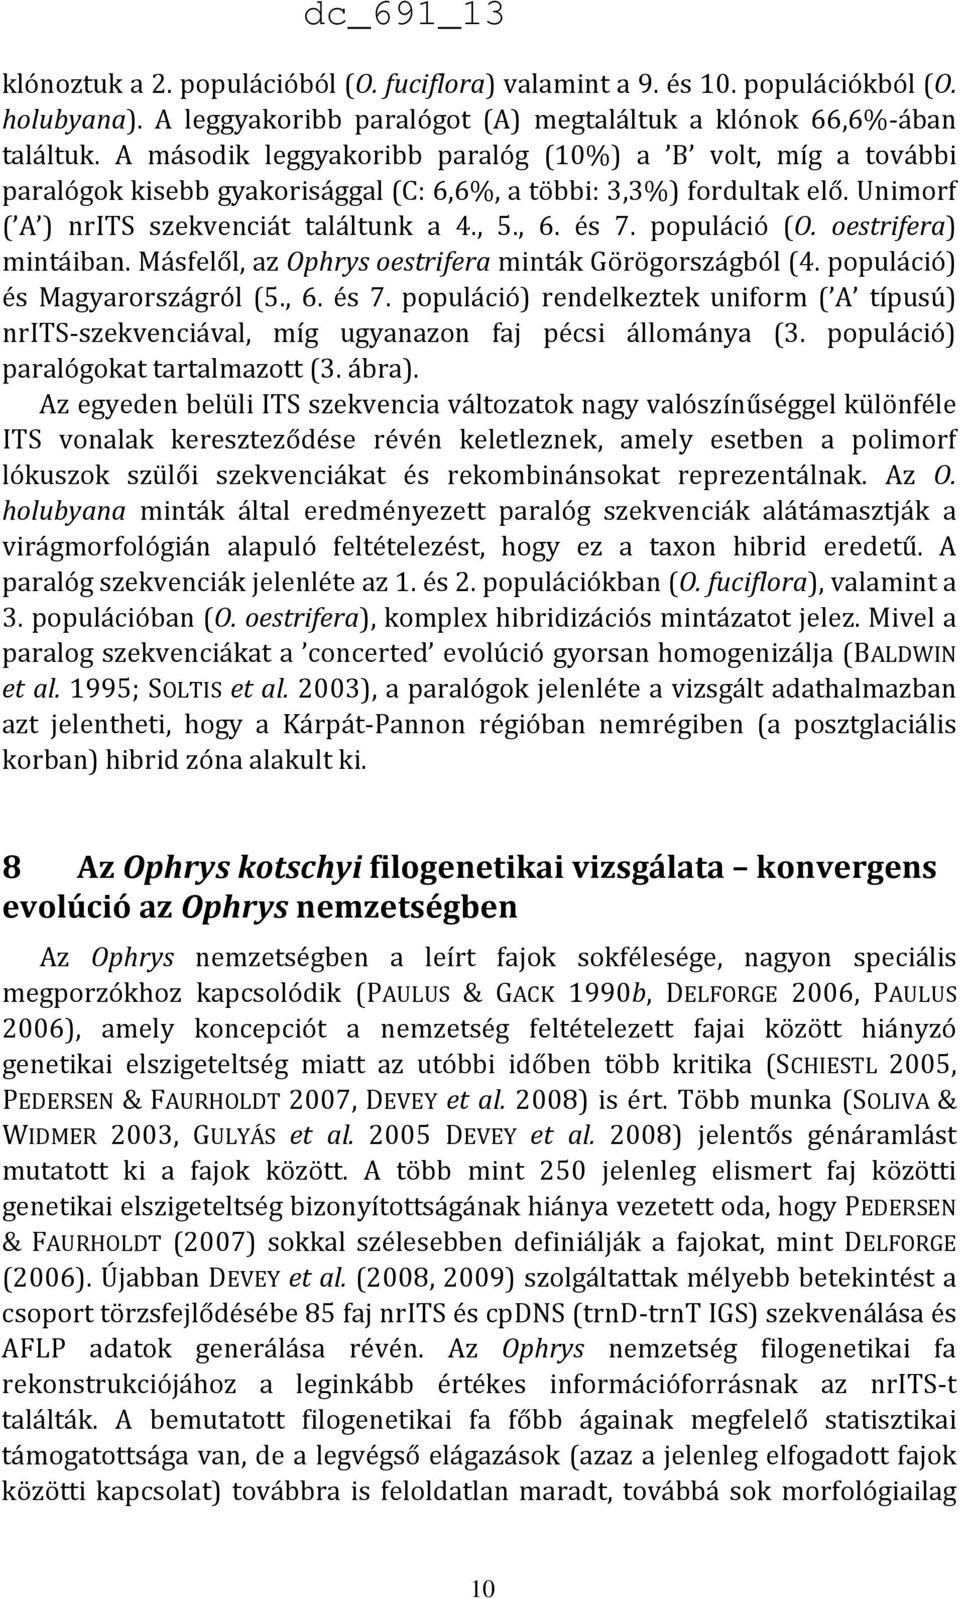 populáció (O. oestrifera) mintáiban. Másfelől, az Ophrys oestrifera minták Görögországból (4. populáció) és Magyarországról (5., 6. és 7.